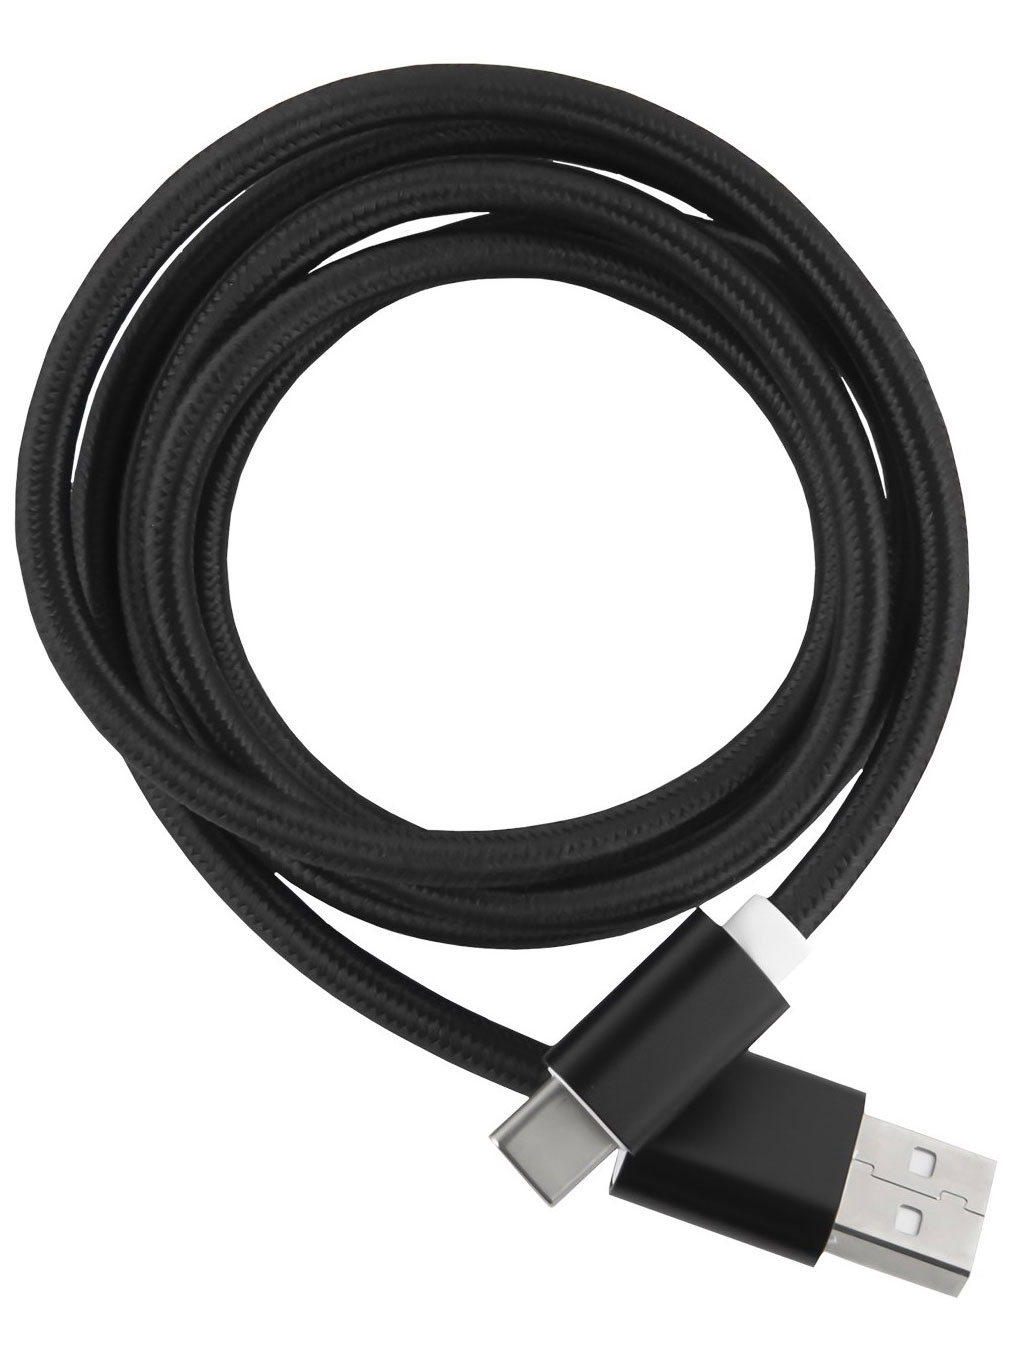 Кабель Red Line USB-Type-C 2.0 нейлоновая оплетка, черный кабель choetech usb type c pd 240 вт 480mbps нейлоновая оплетка 2 м xcc 1036 bk